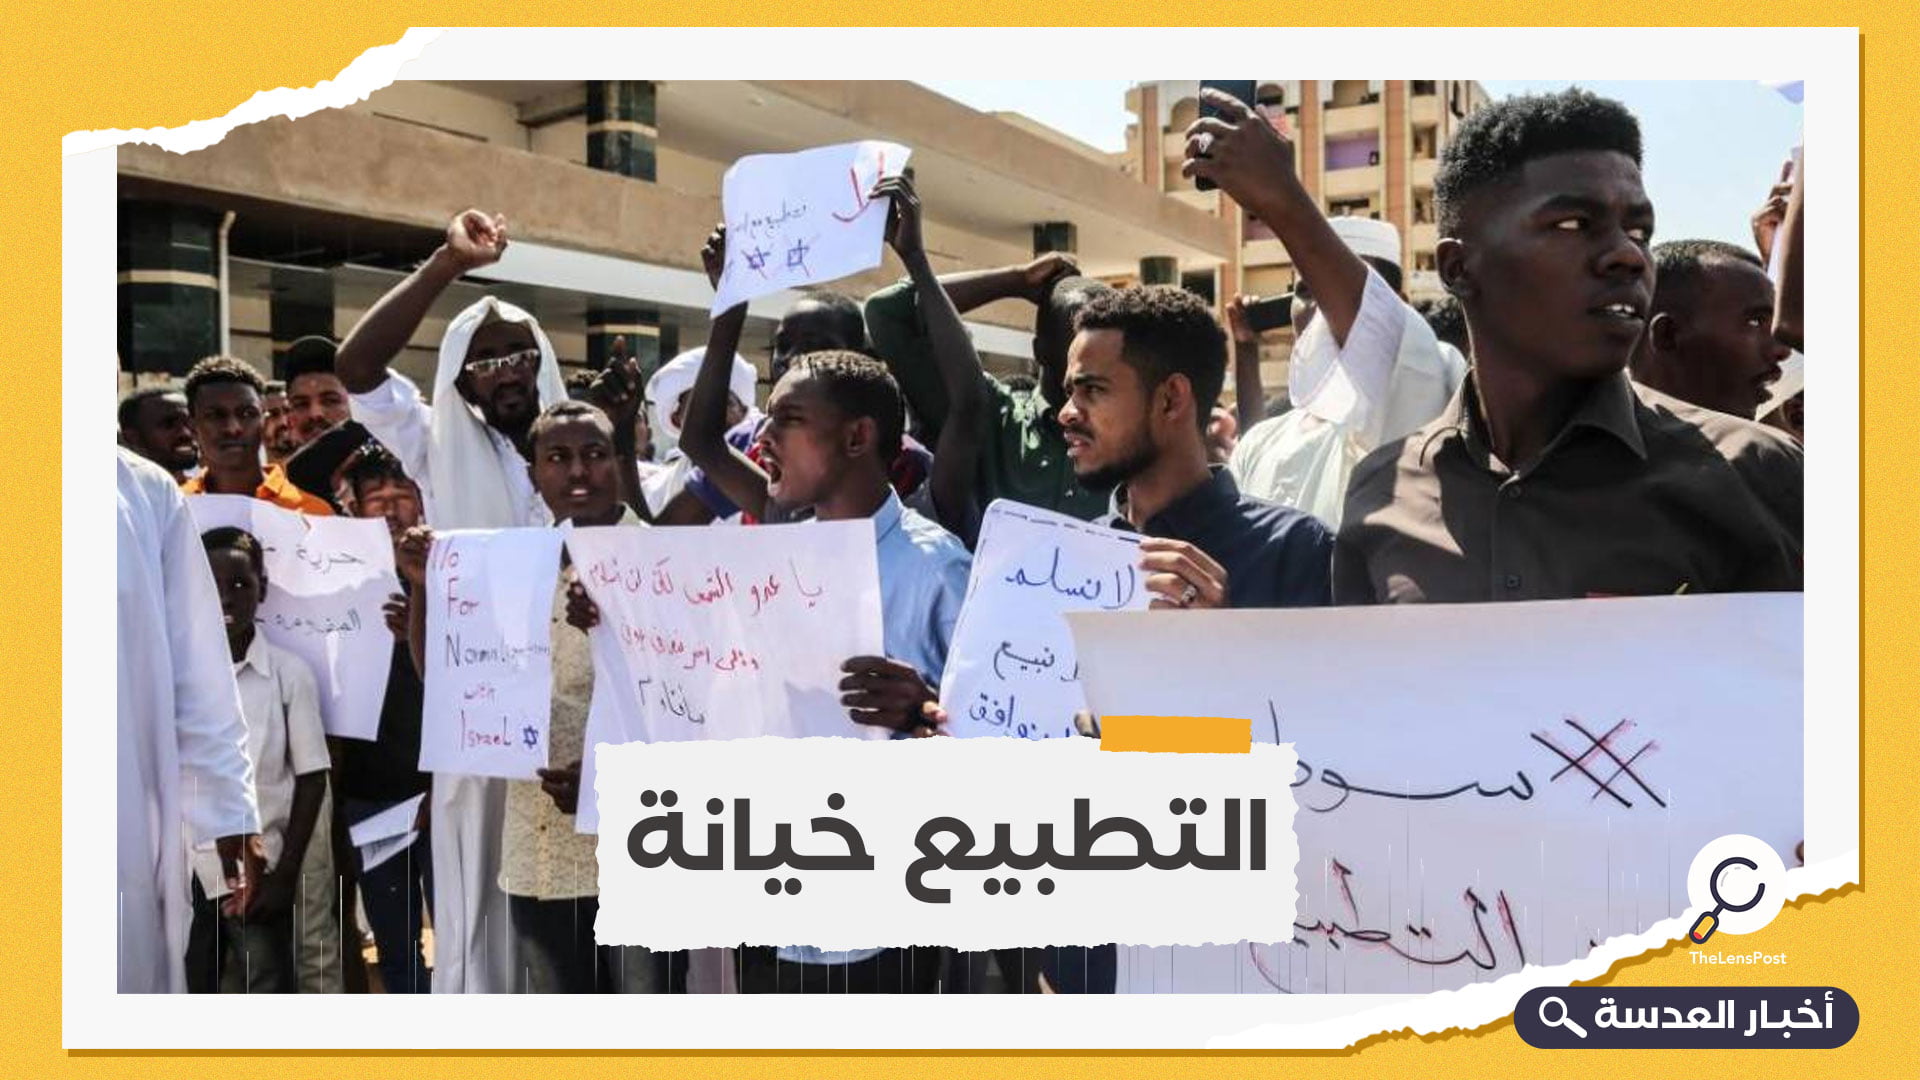 السودان.. مظاهرات شعبية غاضبة بعد إعلان توقيع اتفاق العار للتطبيع مع إسرائيل